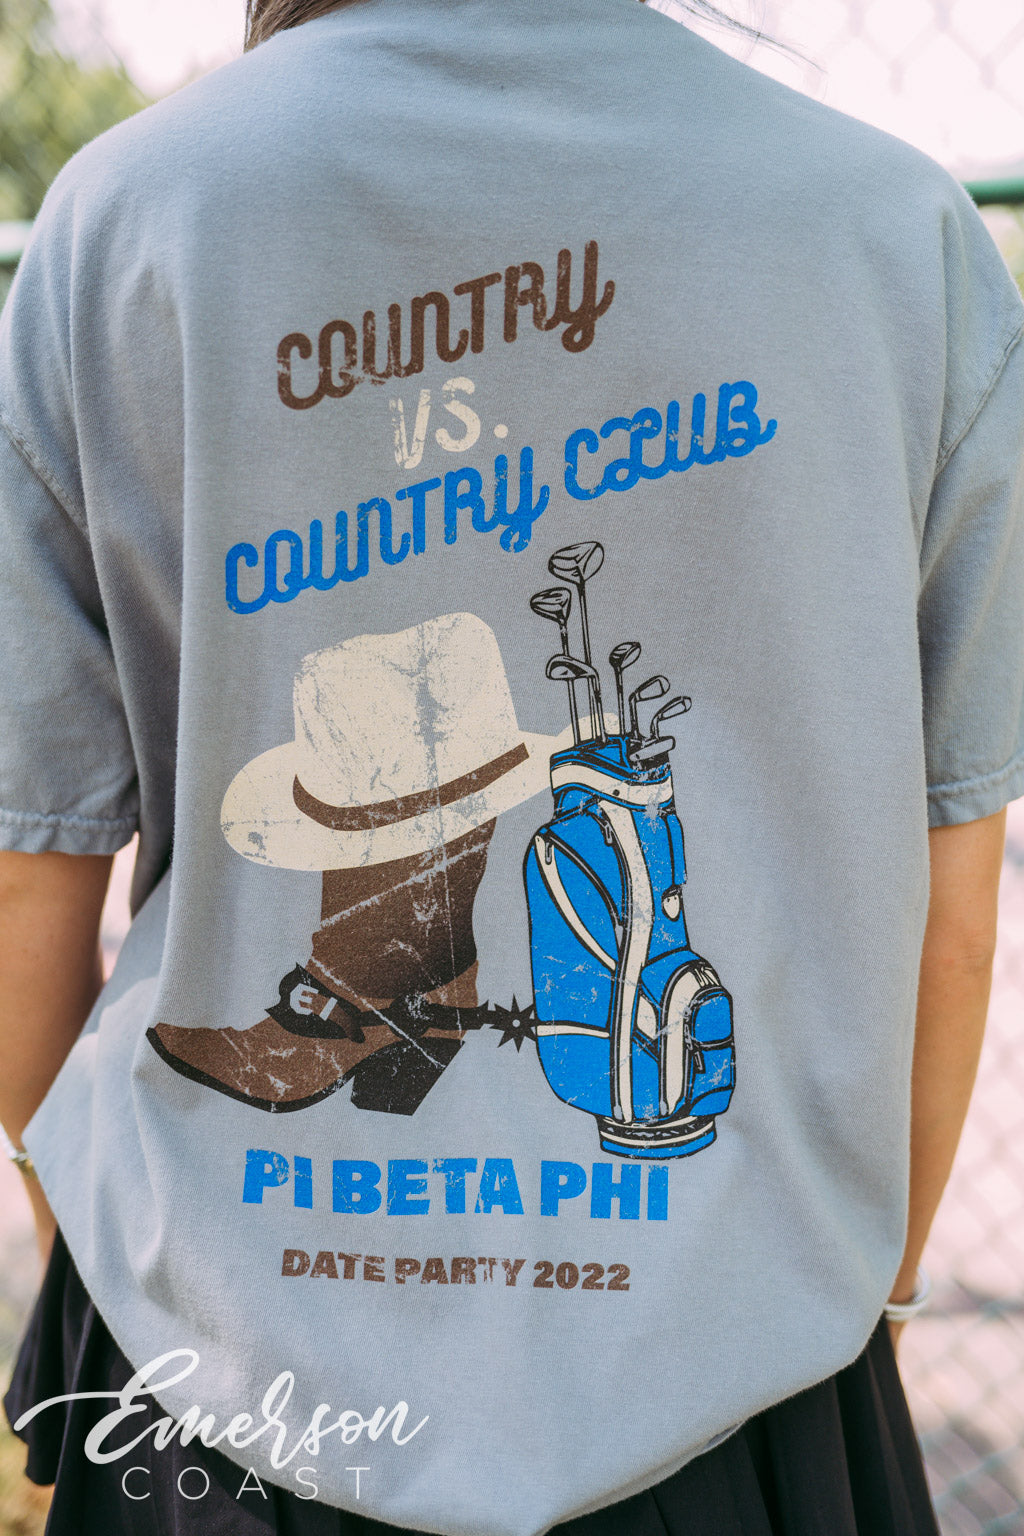 Pi Phi Country v Country Club Tshirt